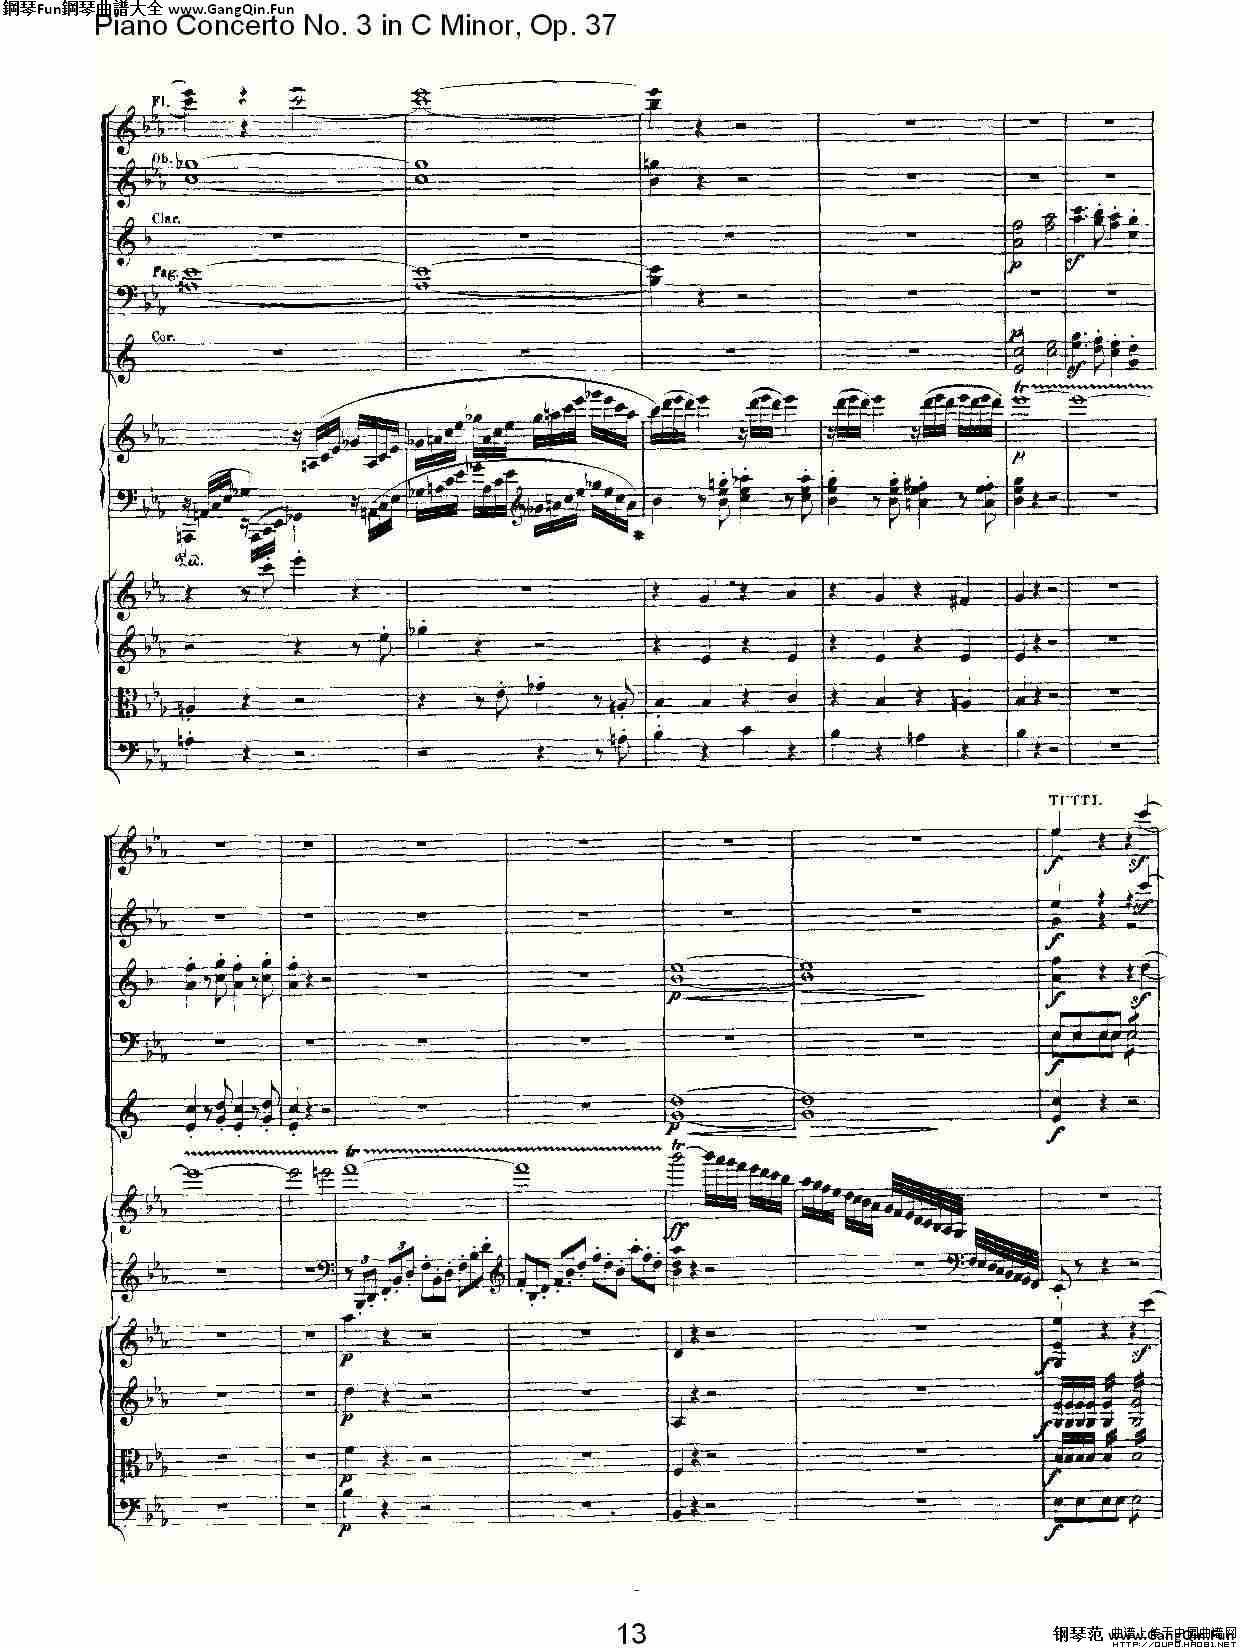 C小調鋼琴第三協奏曲 Op.37  第一樂章_簡譜